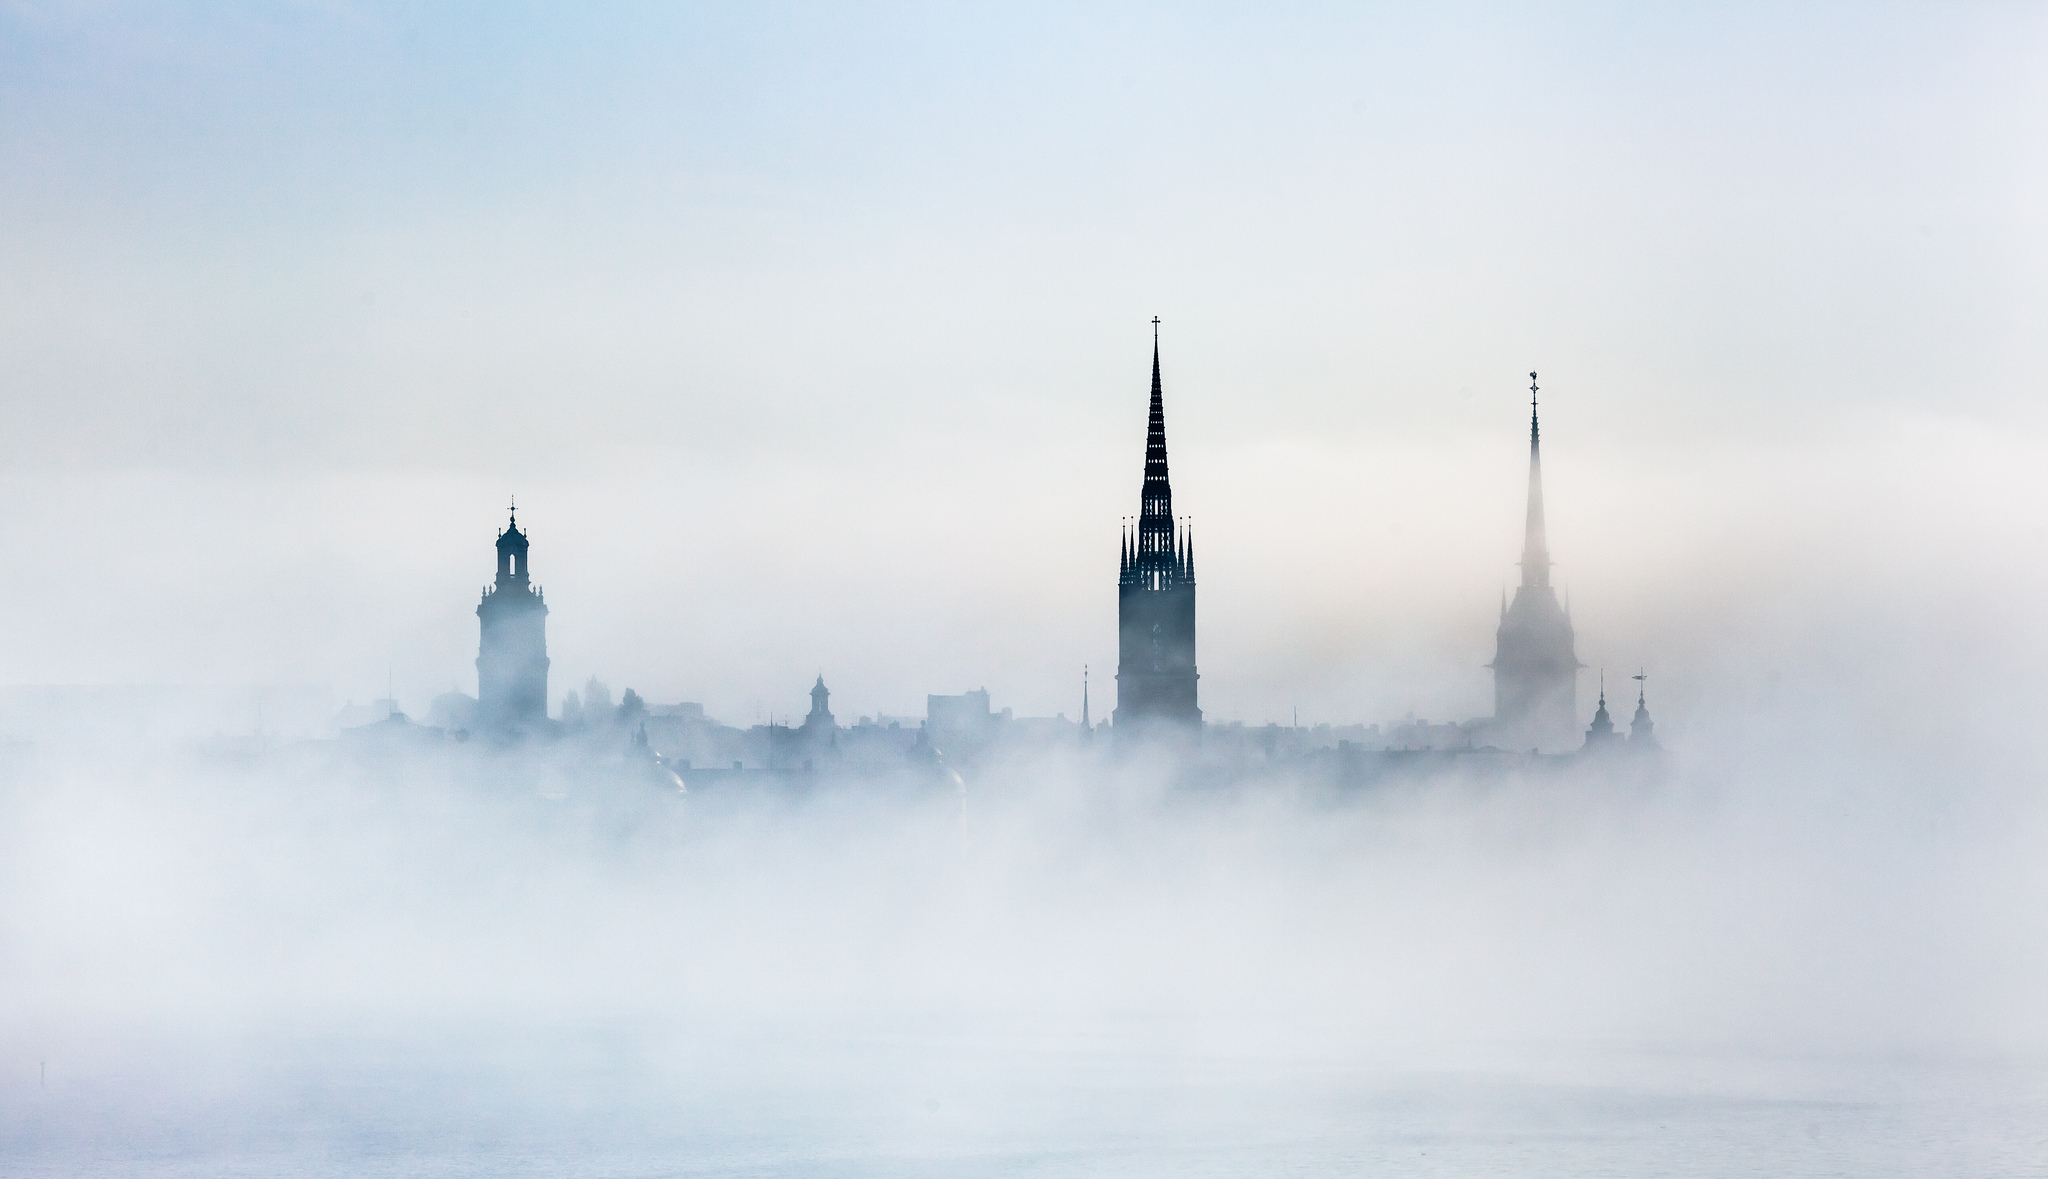 Stockholm Building Fog Sweden 2048x1179